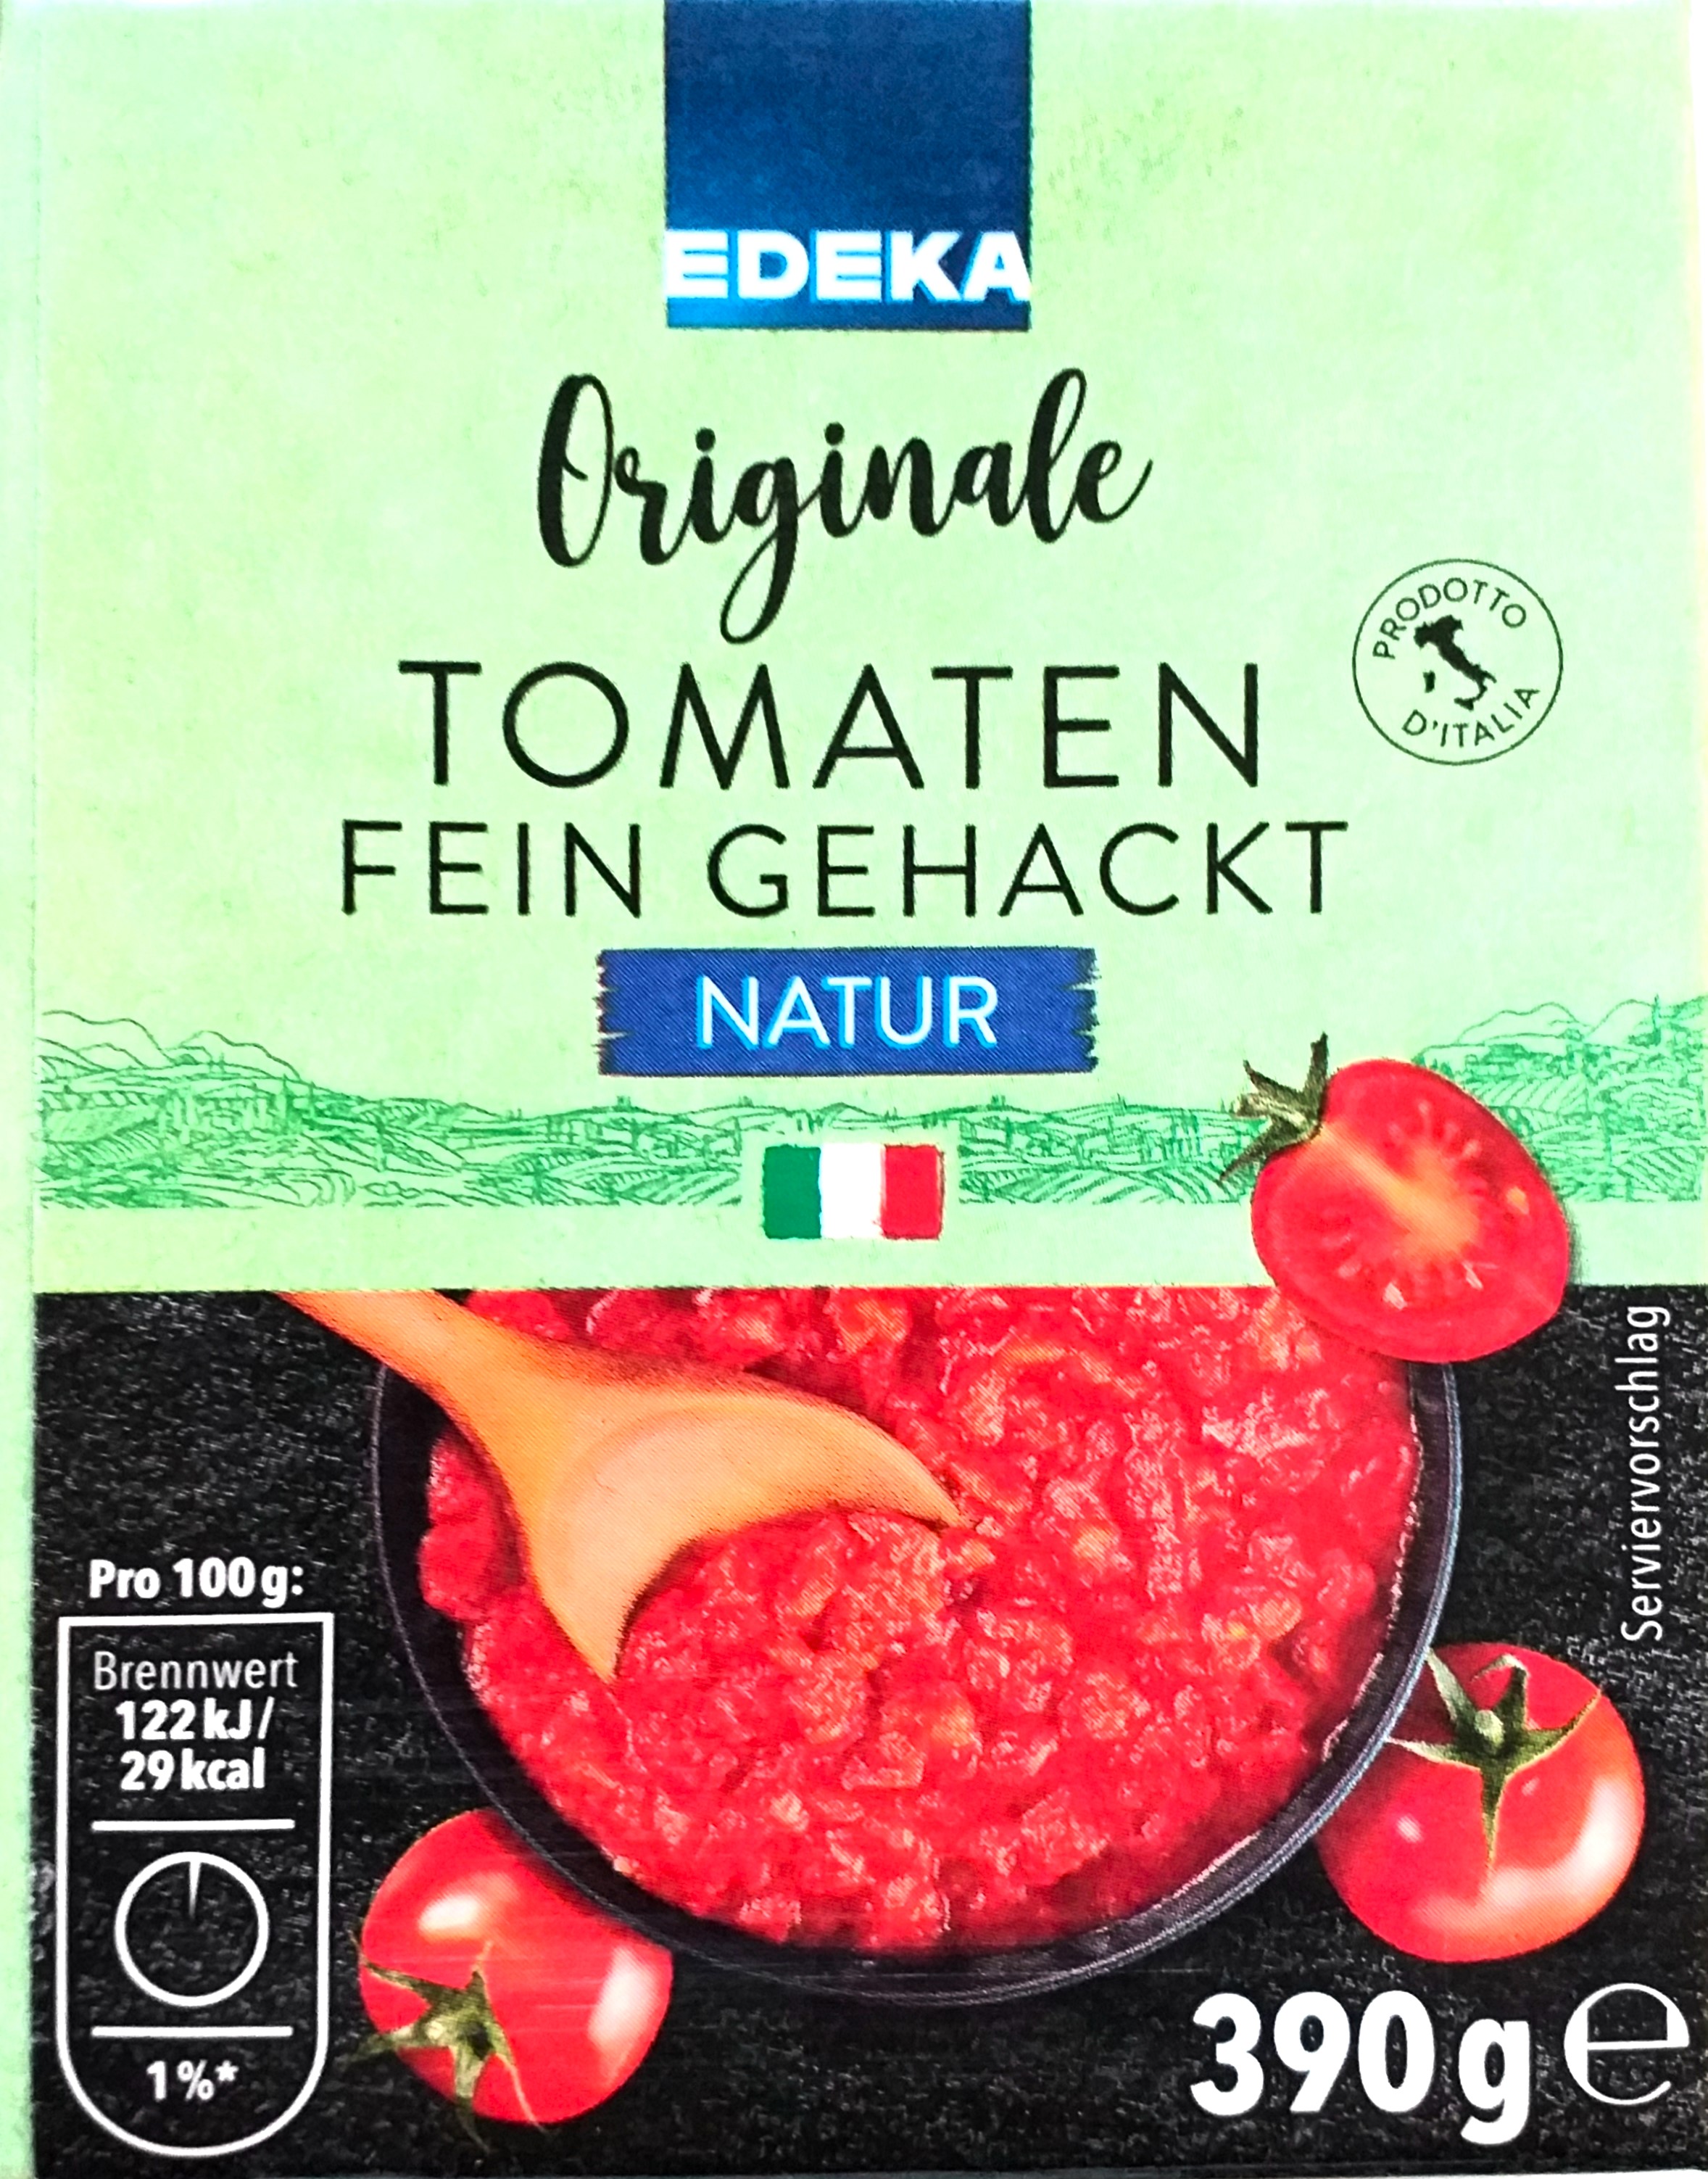 EDEKA Original Tomaten fein gehackt 390g